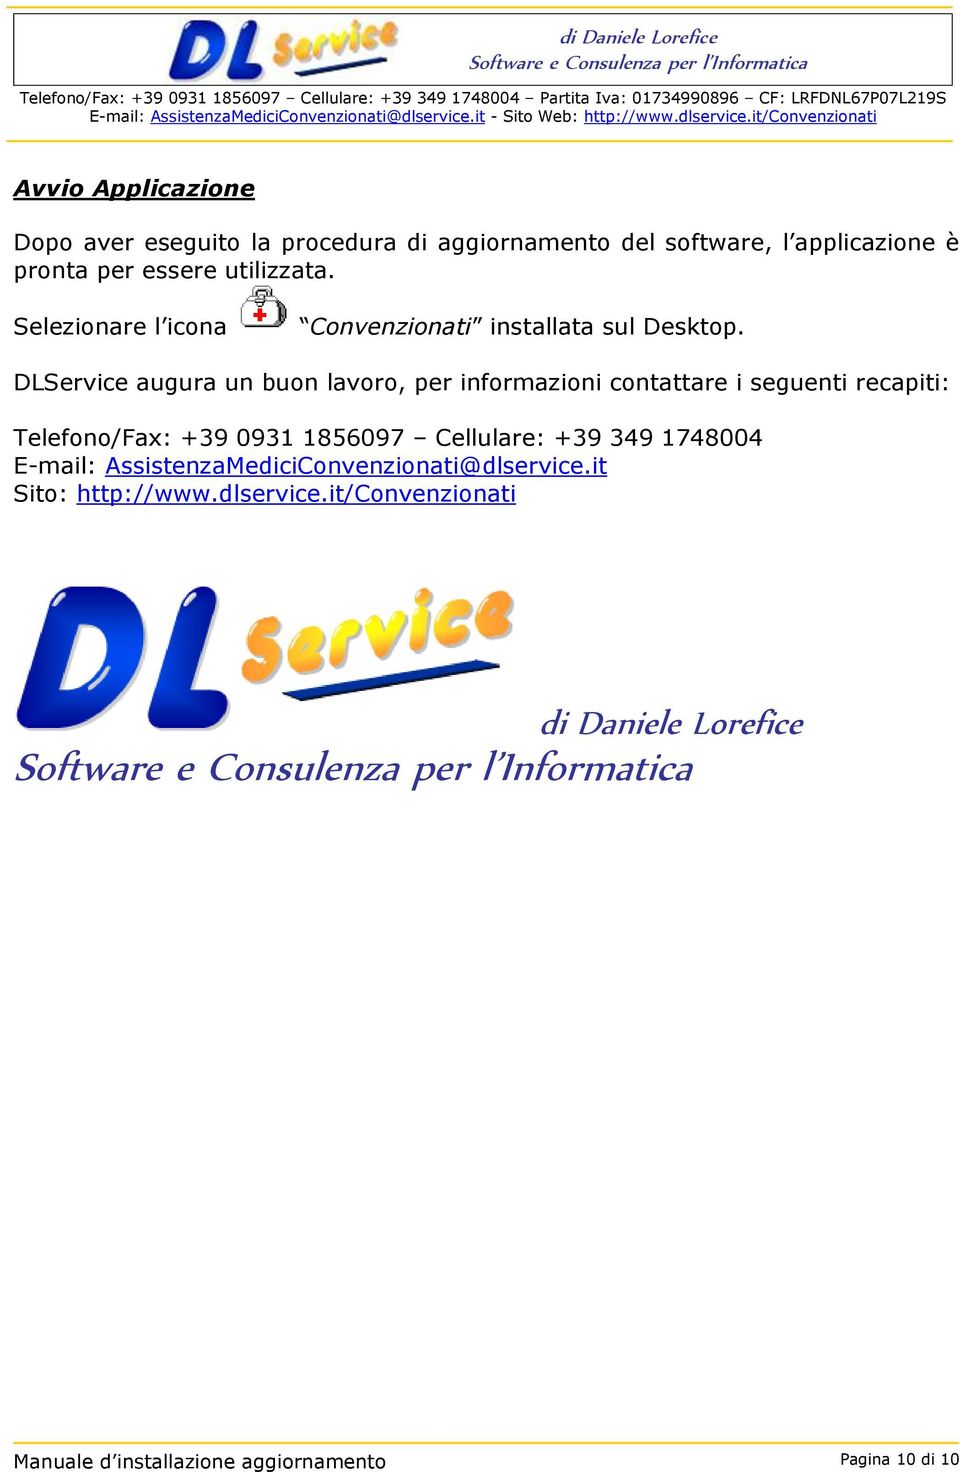 DLService augura un buon lavoro, per informazioni contattare i seguenti recapiti: Telefono/Fax: +39 0931 1856097 Cellulare: